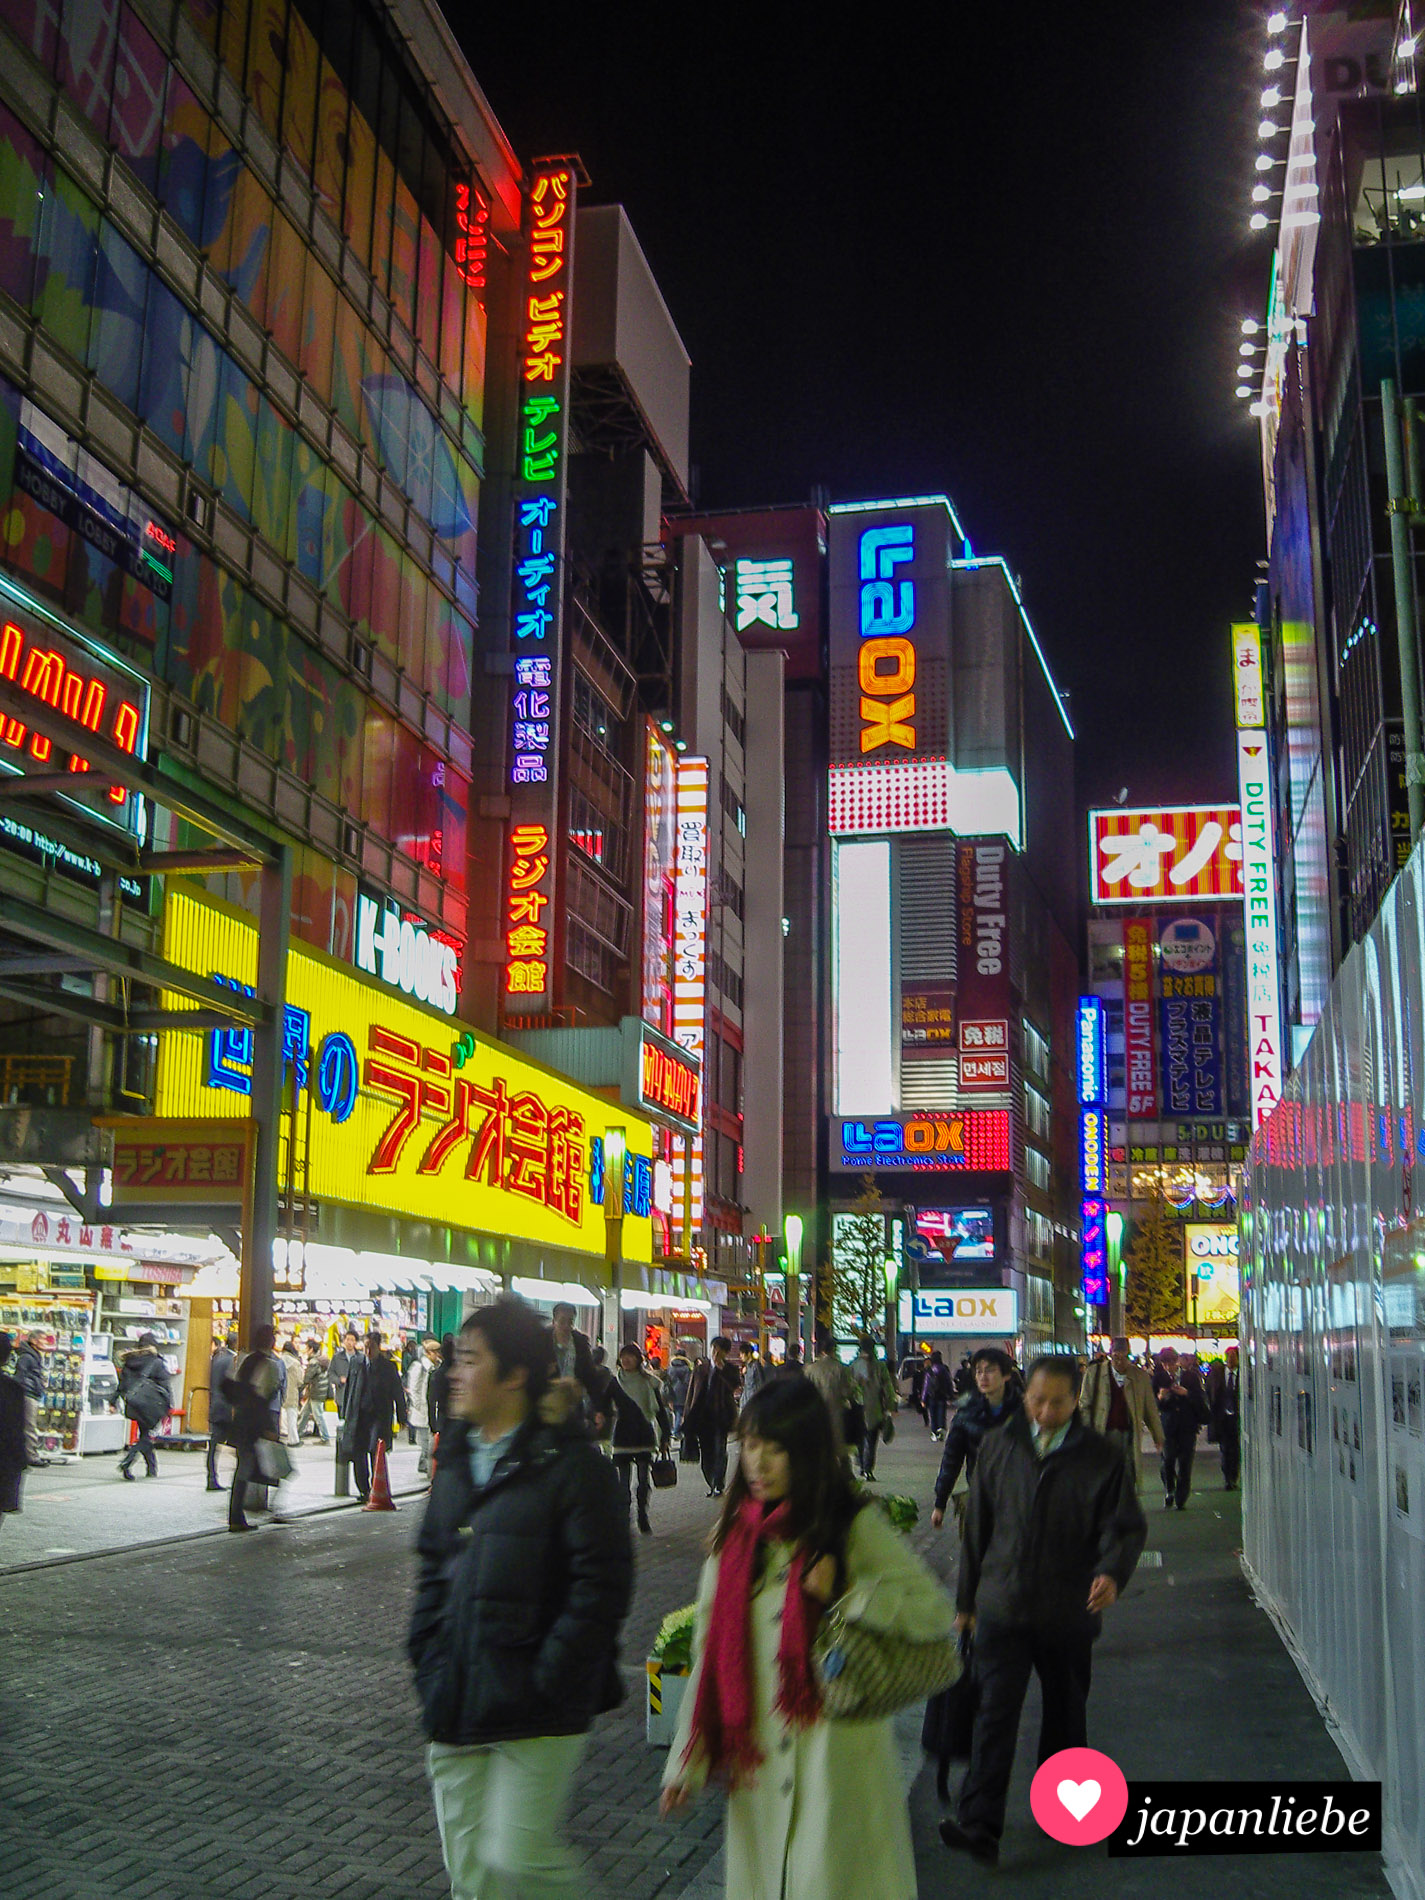 Akihabara oder Akiba, wie es auch genannt wird, verwandelt sich bei Dunkelheit in ein buntes Neonlichtermeer.